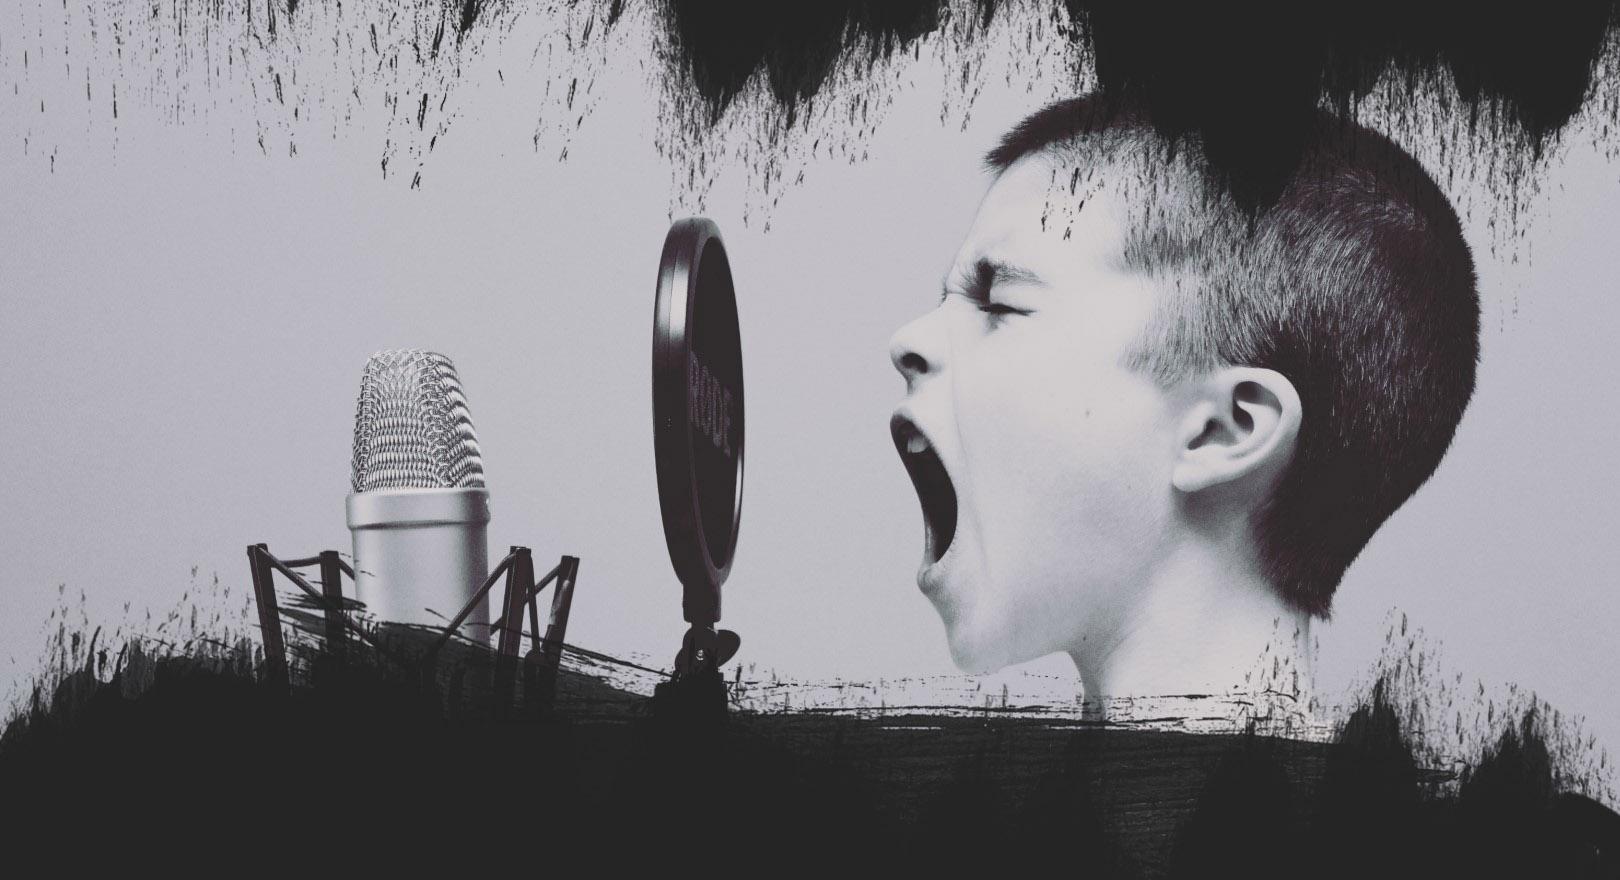 A children singing in a mic.